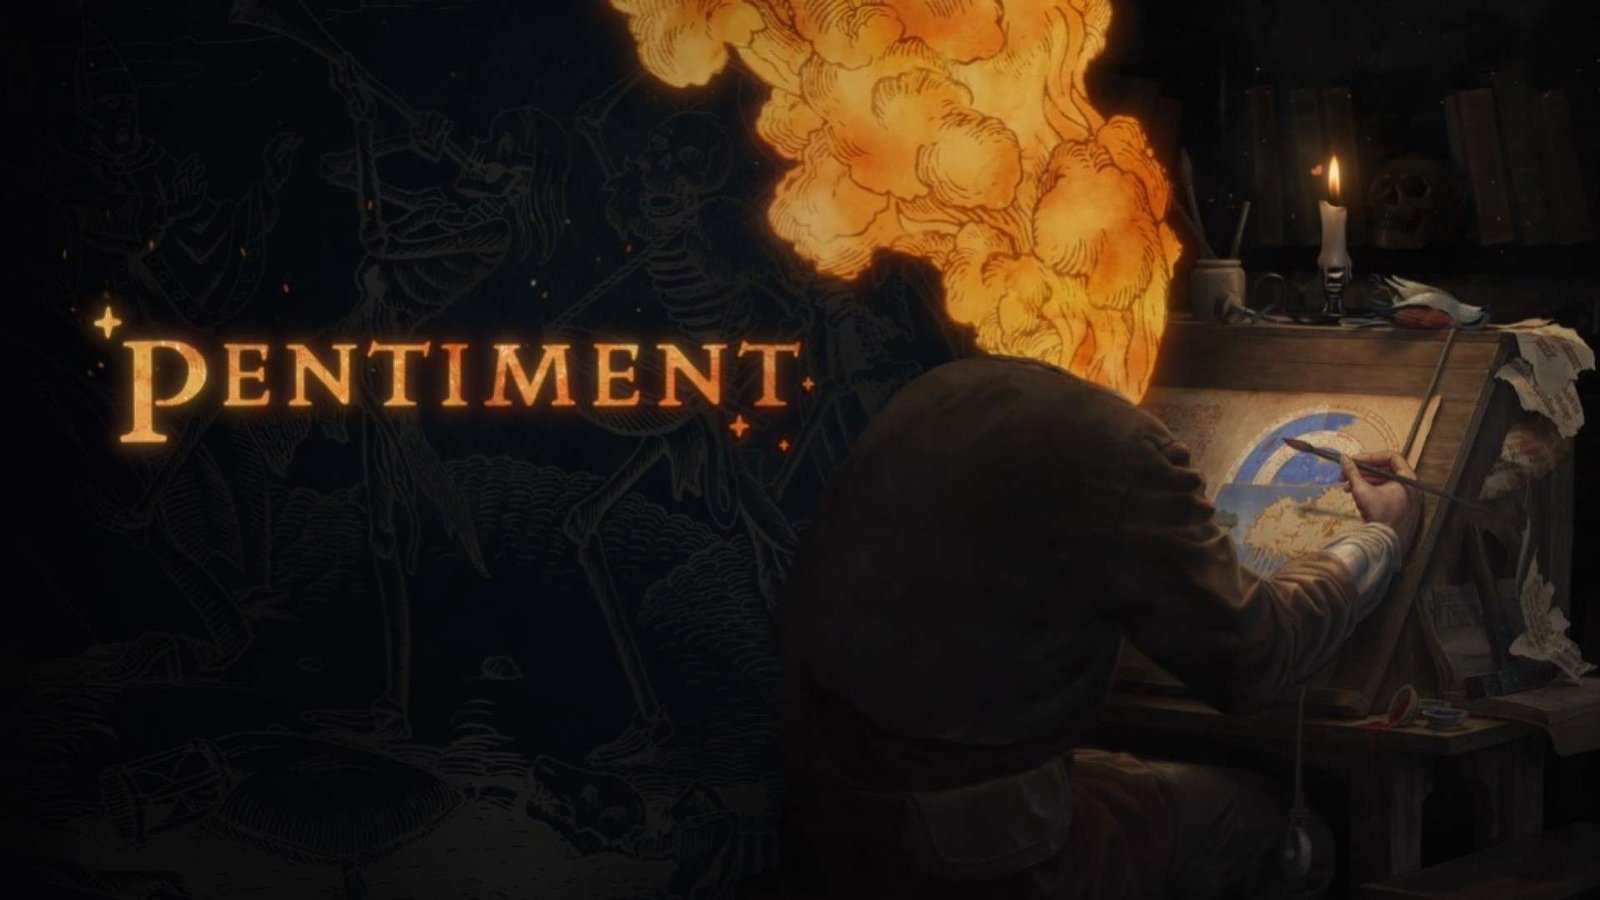 لعبة Pentiment قادمة في 15 نوفمبر